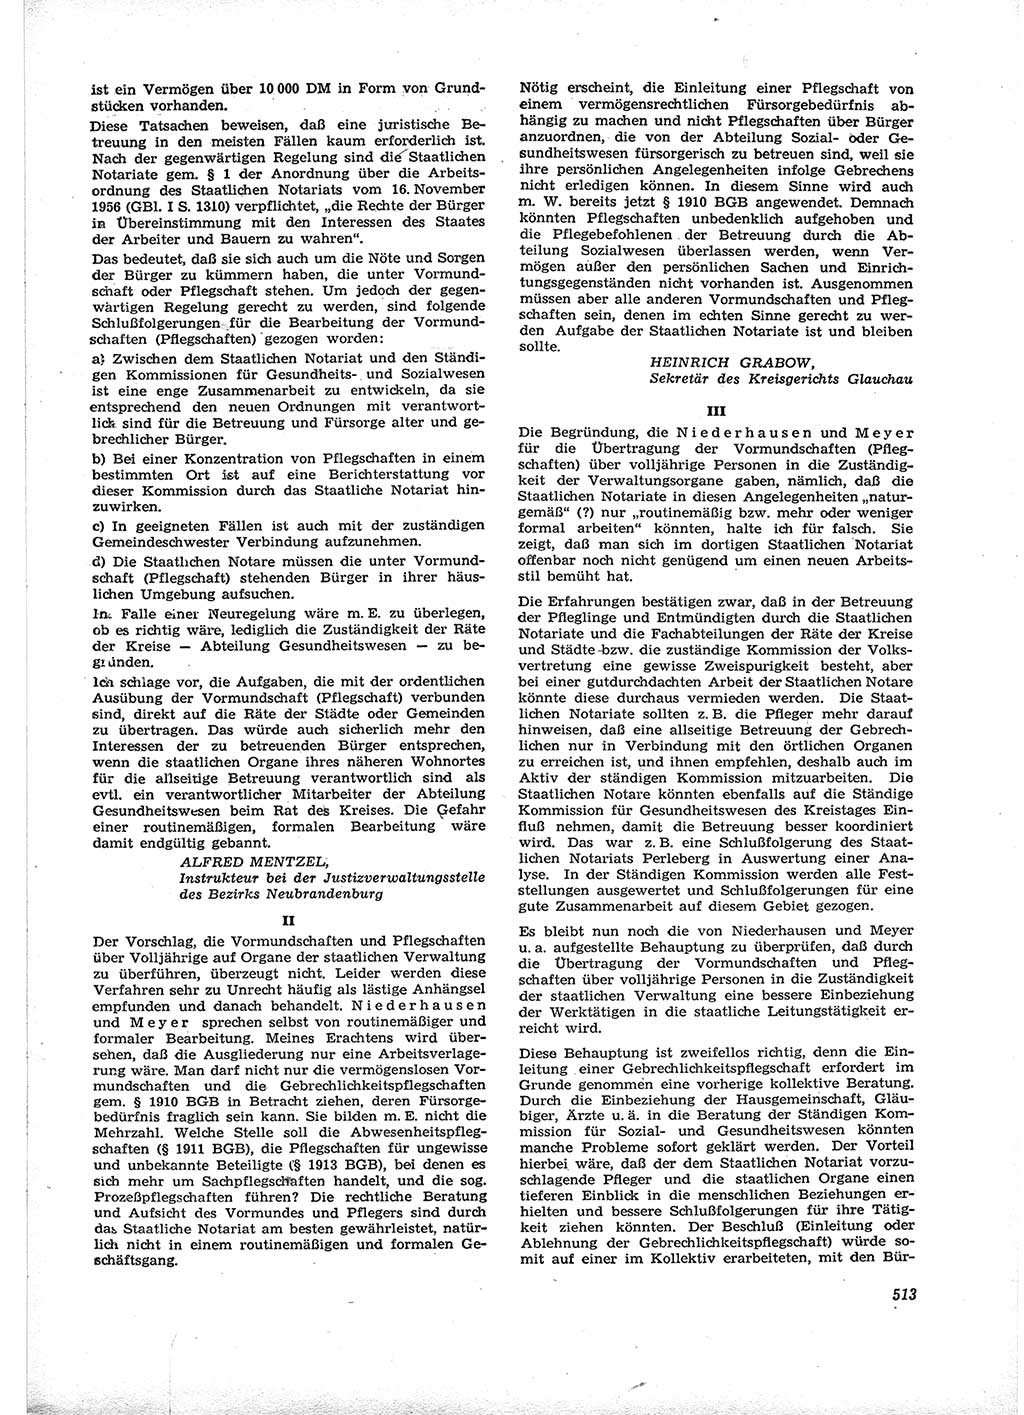 Neue Justiz (NJ), Zeitschrift für Recht und Rechtswissenschaft [Deutsche Demokratische Republik (DDR)], 16. Jahrgang 1962, Seite 513 (NJ DDR 1962, S. 513)